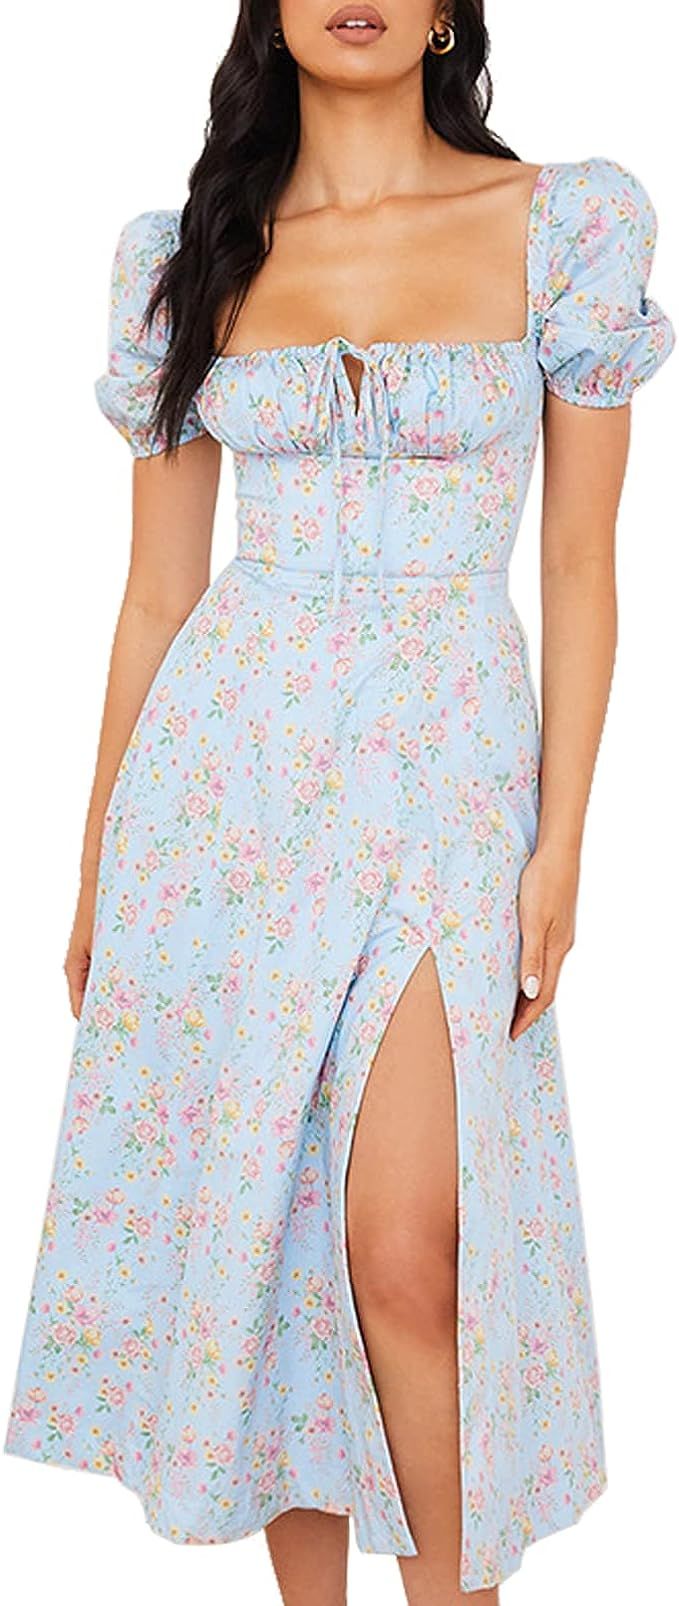 Boho Dress for Women Cottagecore Dress Maxi Dress Summer Wrap Floral Casual Vintage Square Neck R... | Amazon (US)